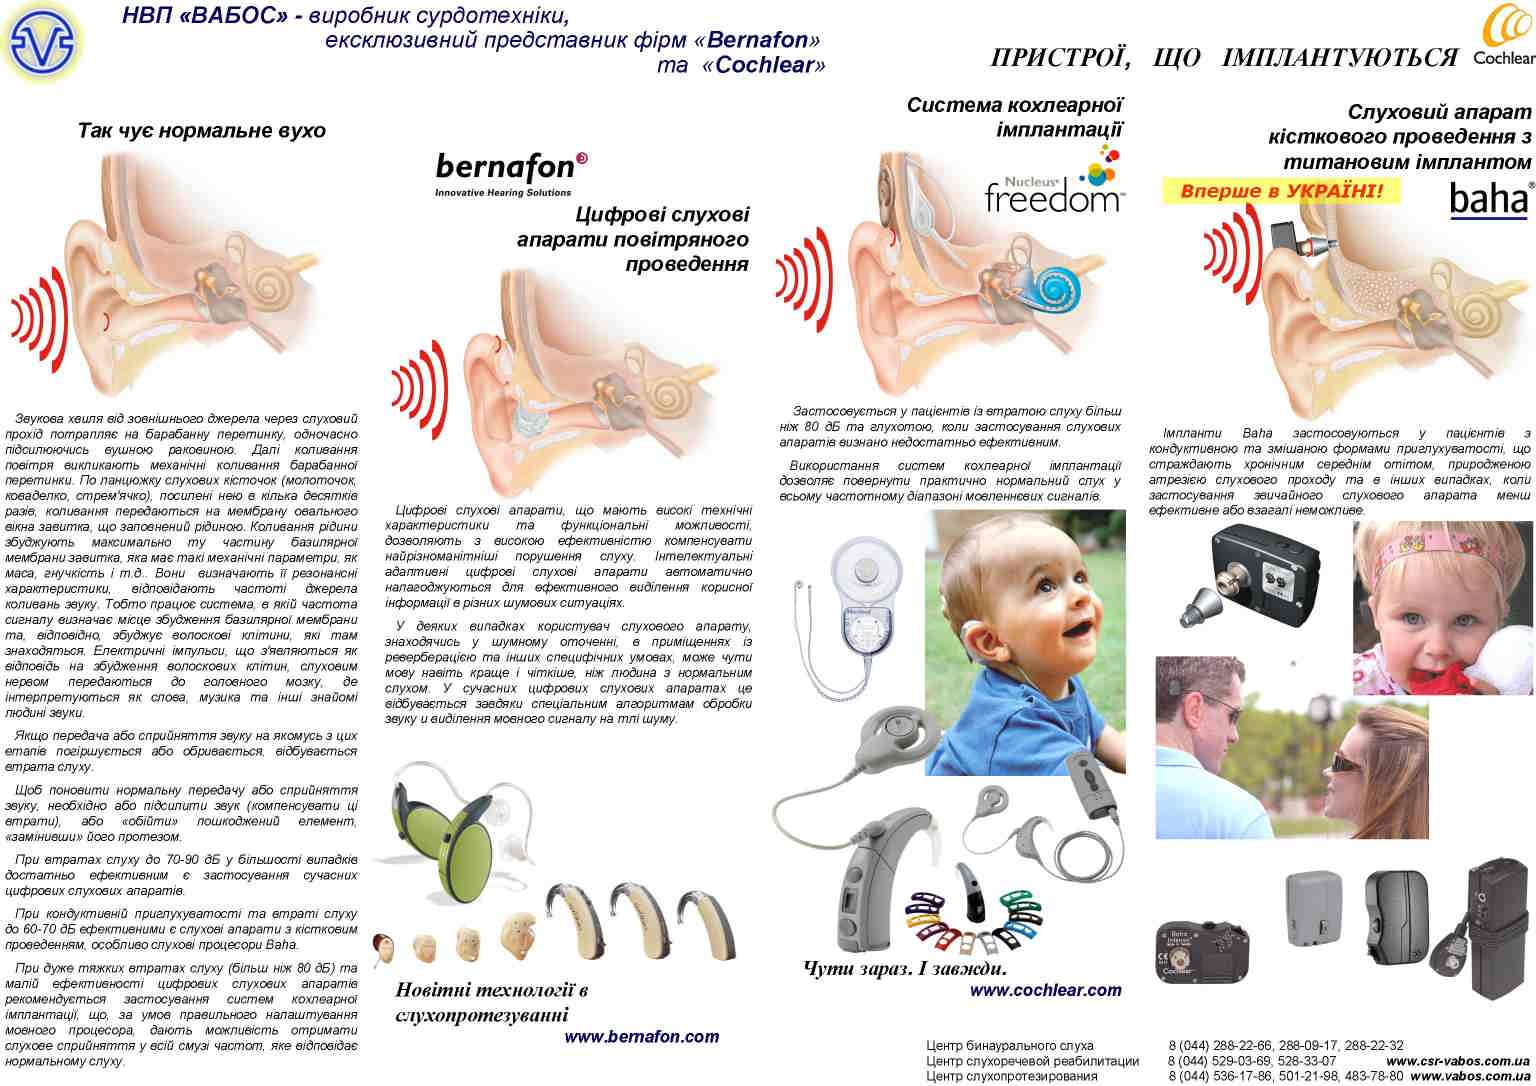 Пристрої для різних видів втрати слуху